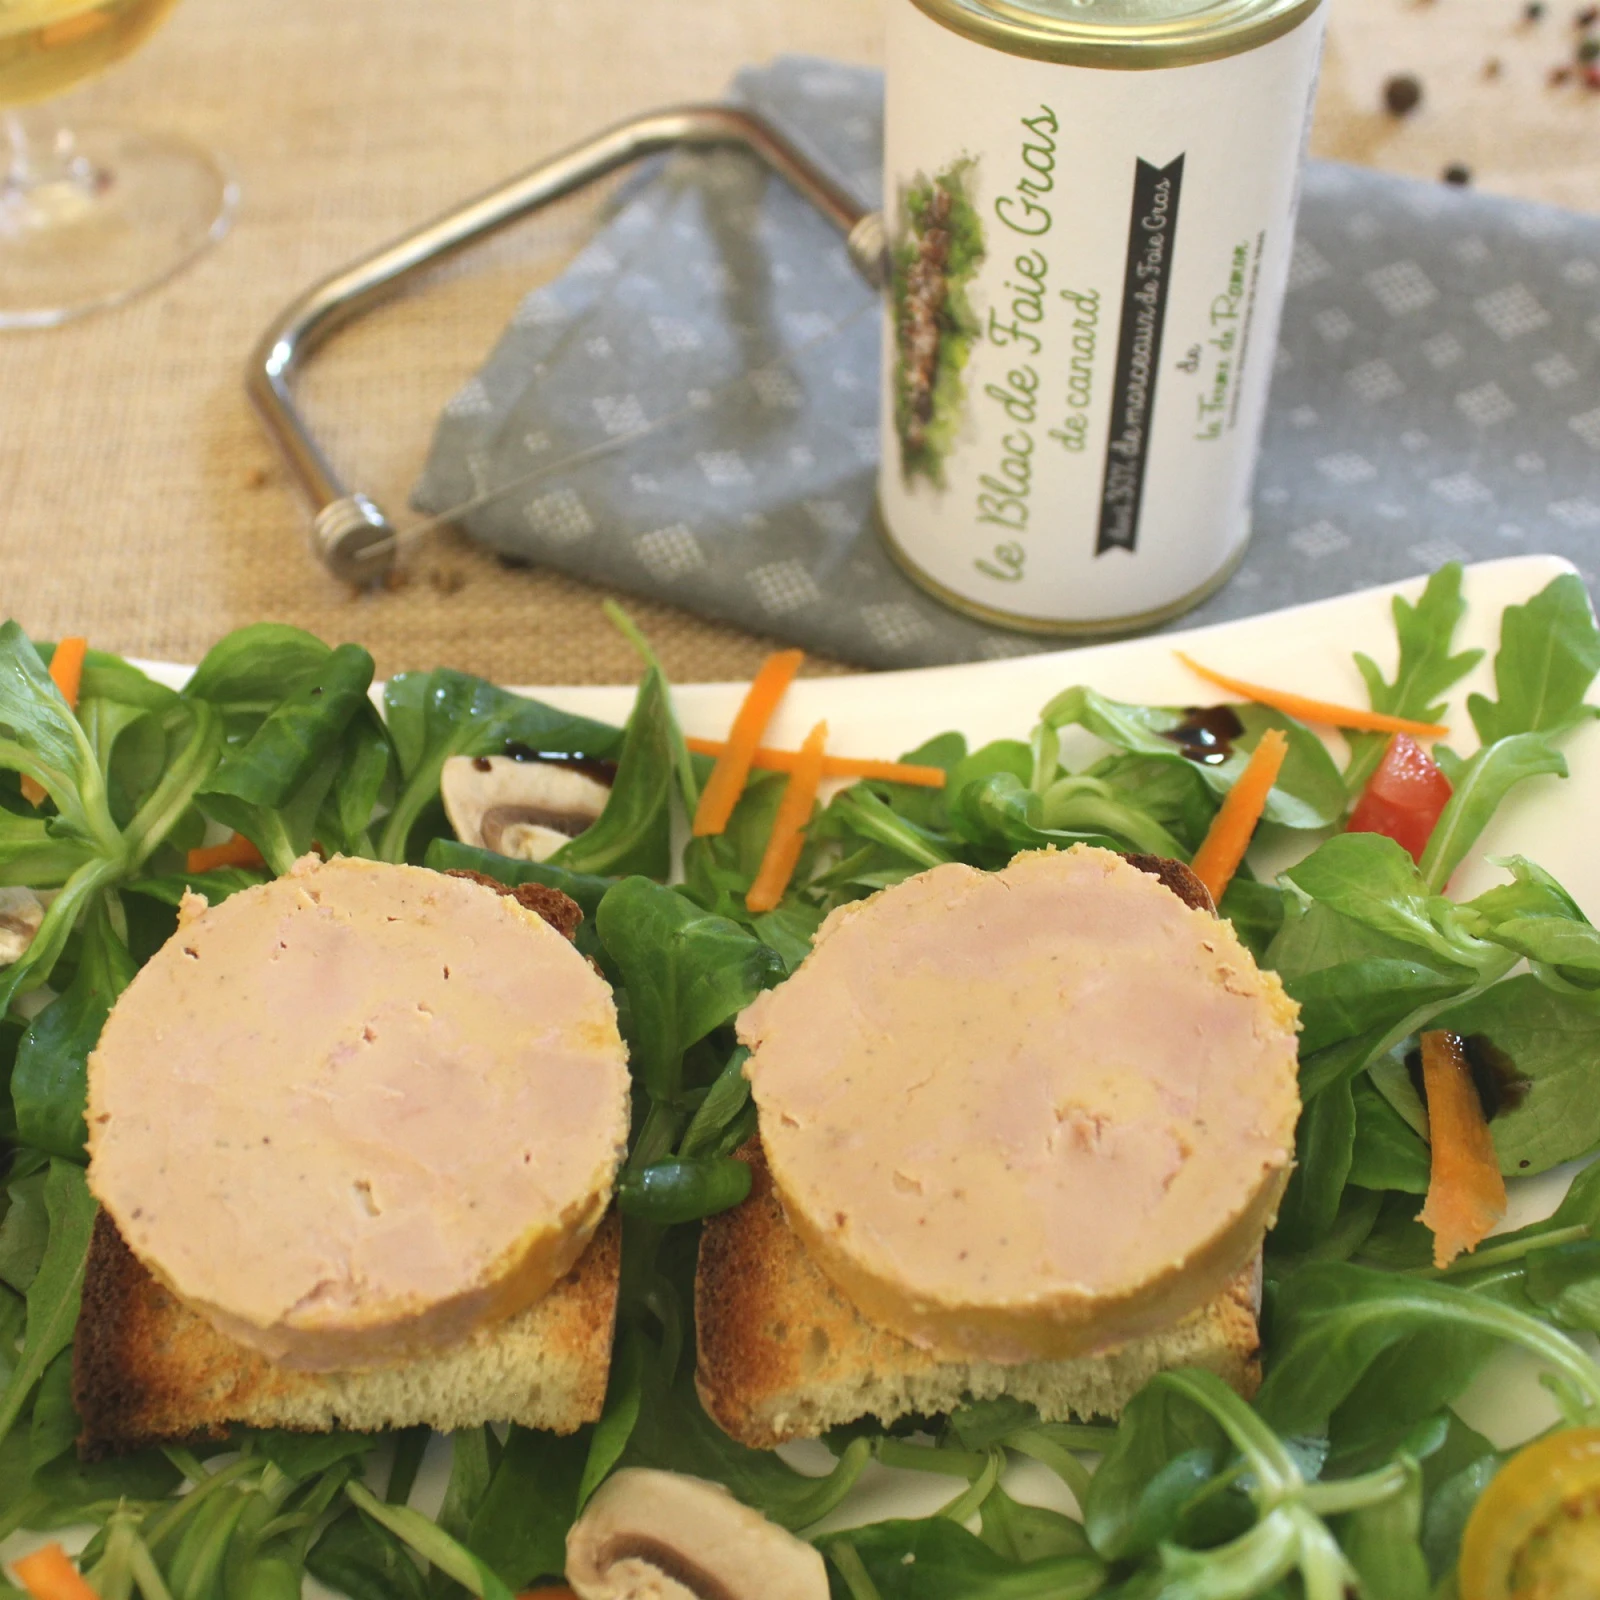 Lyre foie gras Ferme de ramon producteur Sud-Ouest foie gras